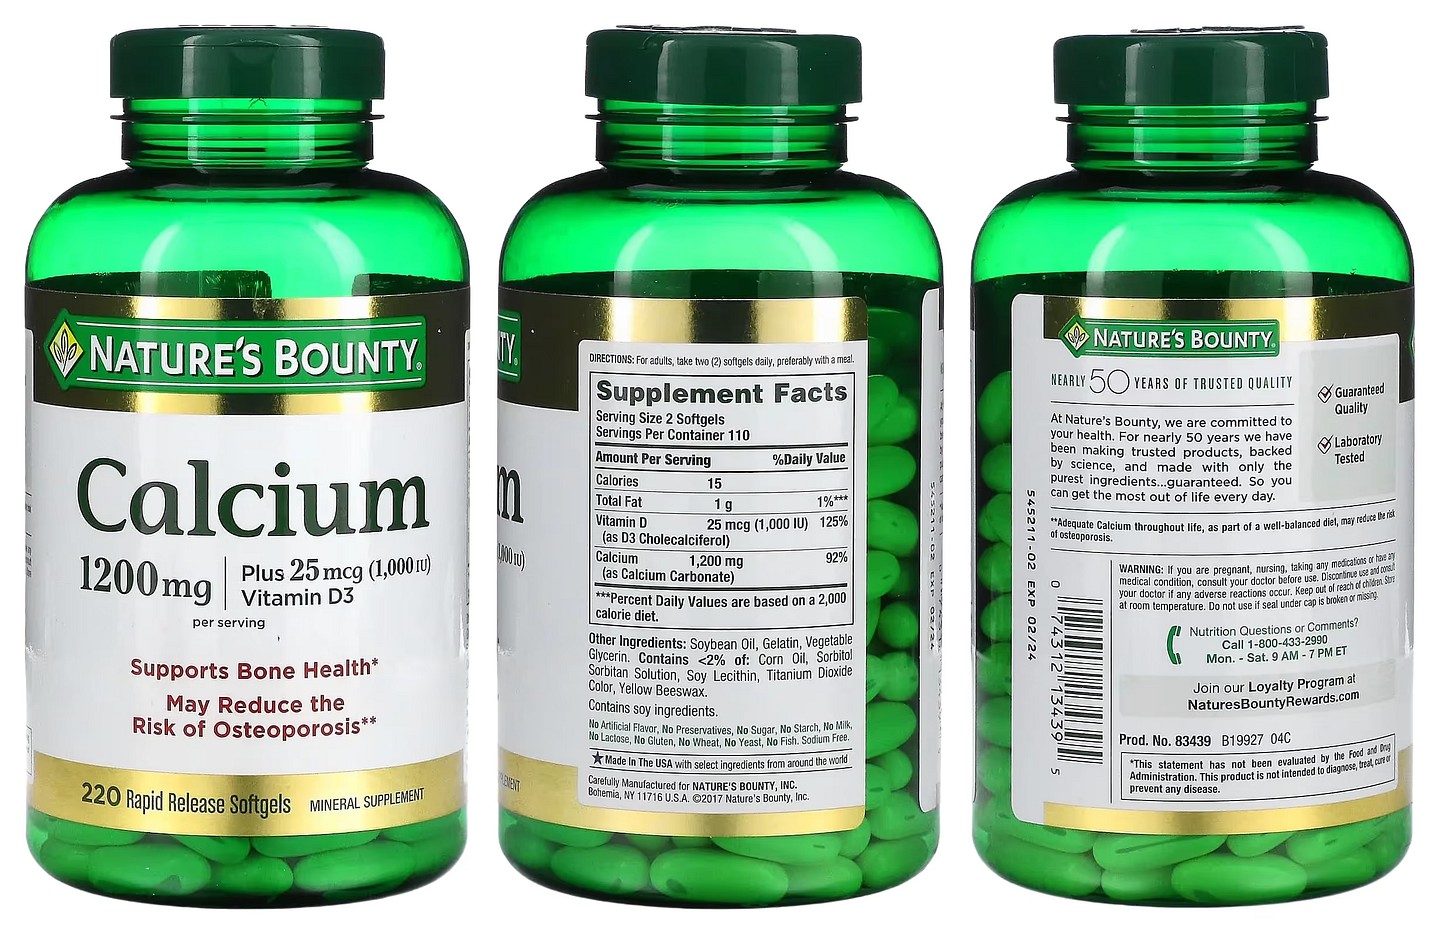 Nature's Bounty, Calcium Plus Vitamin D3 packaging